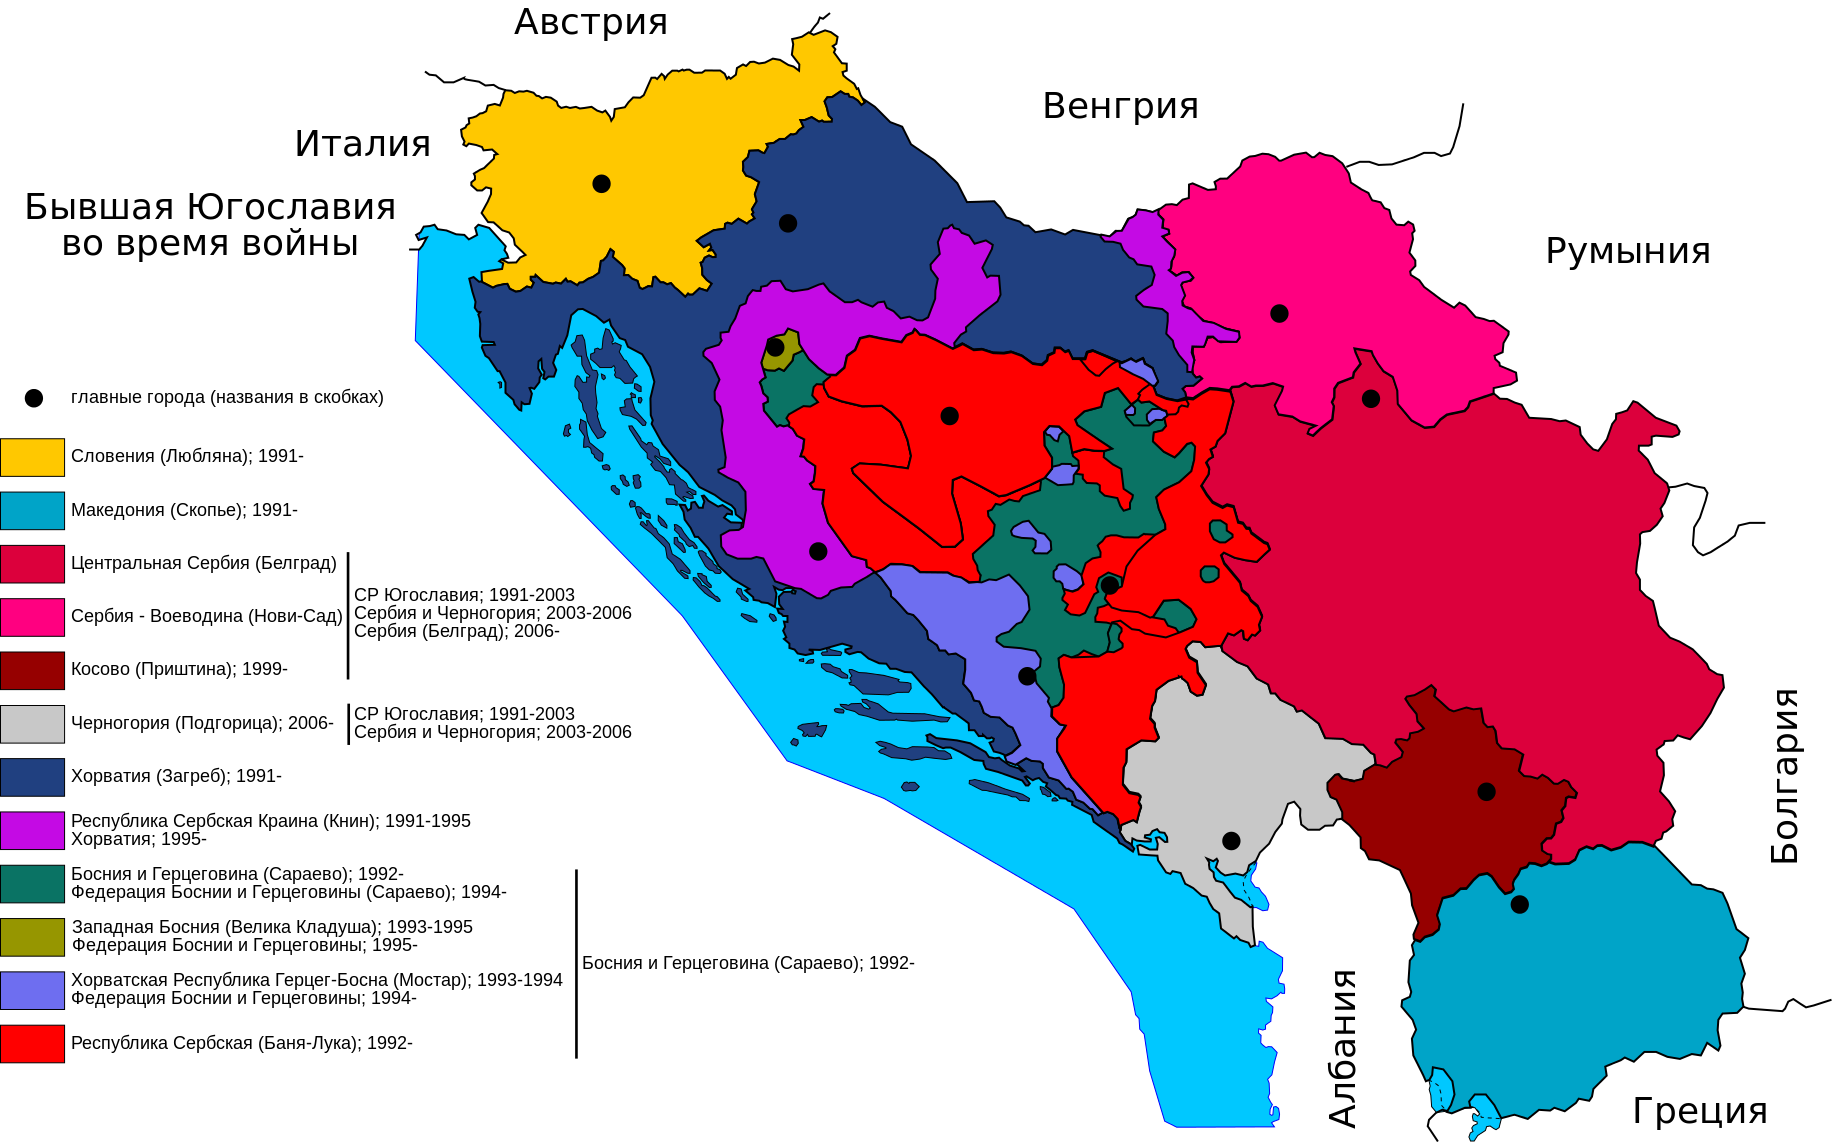 former Jugoslavia